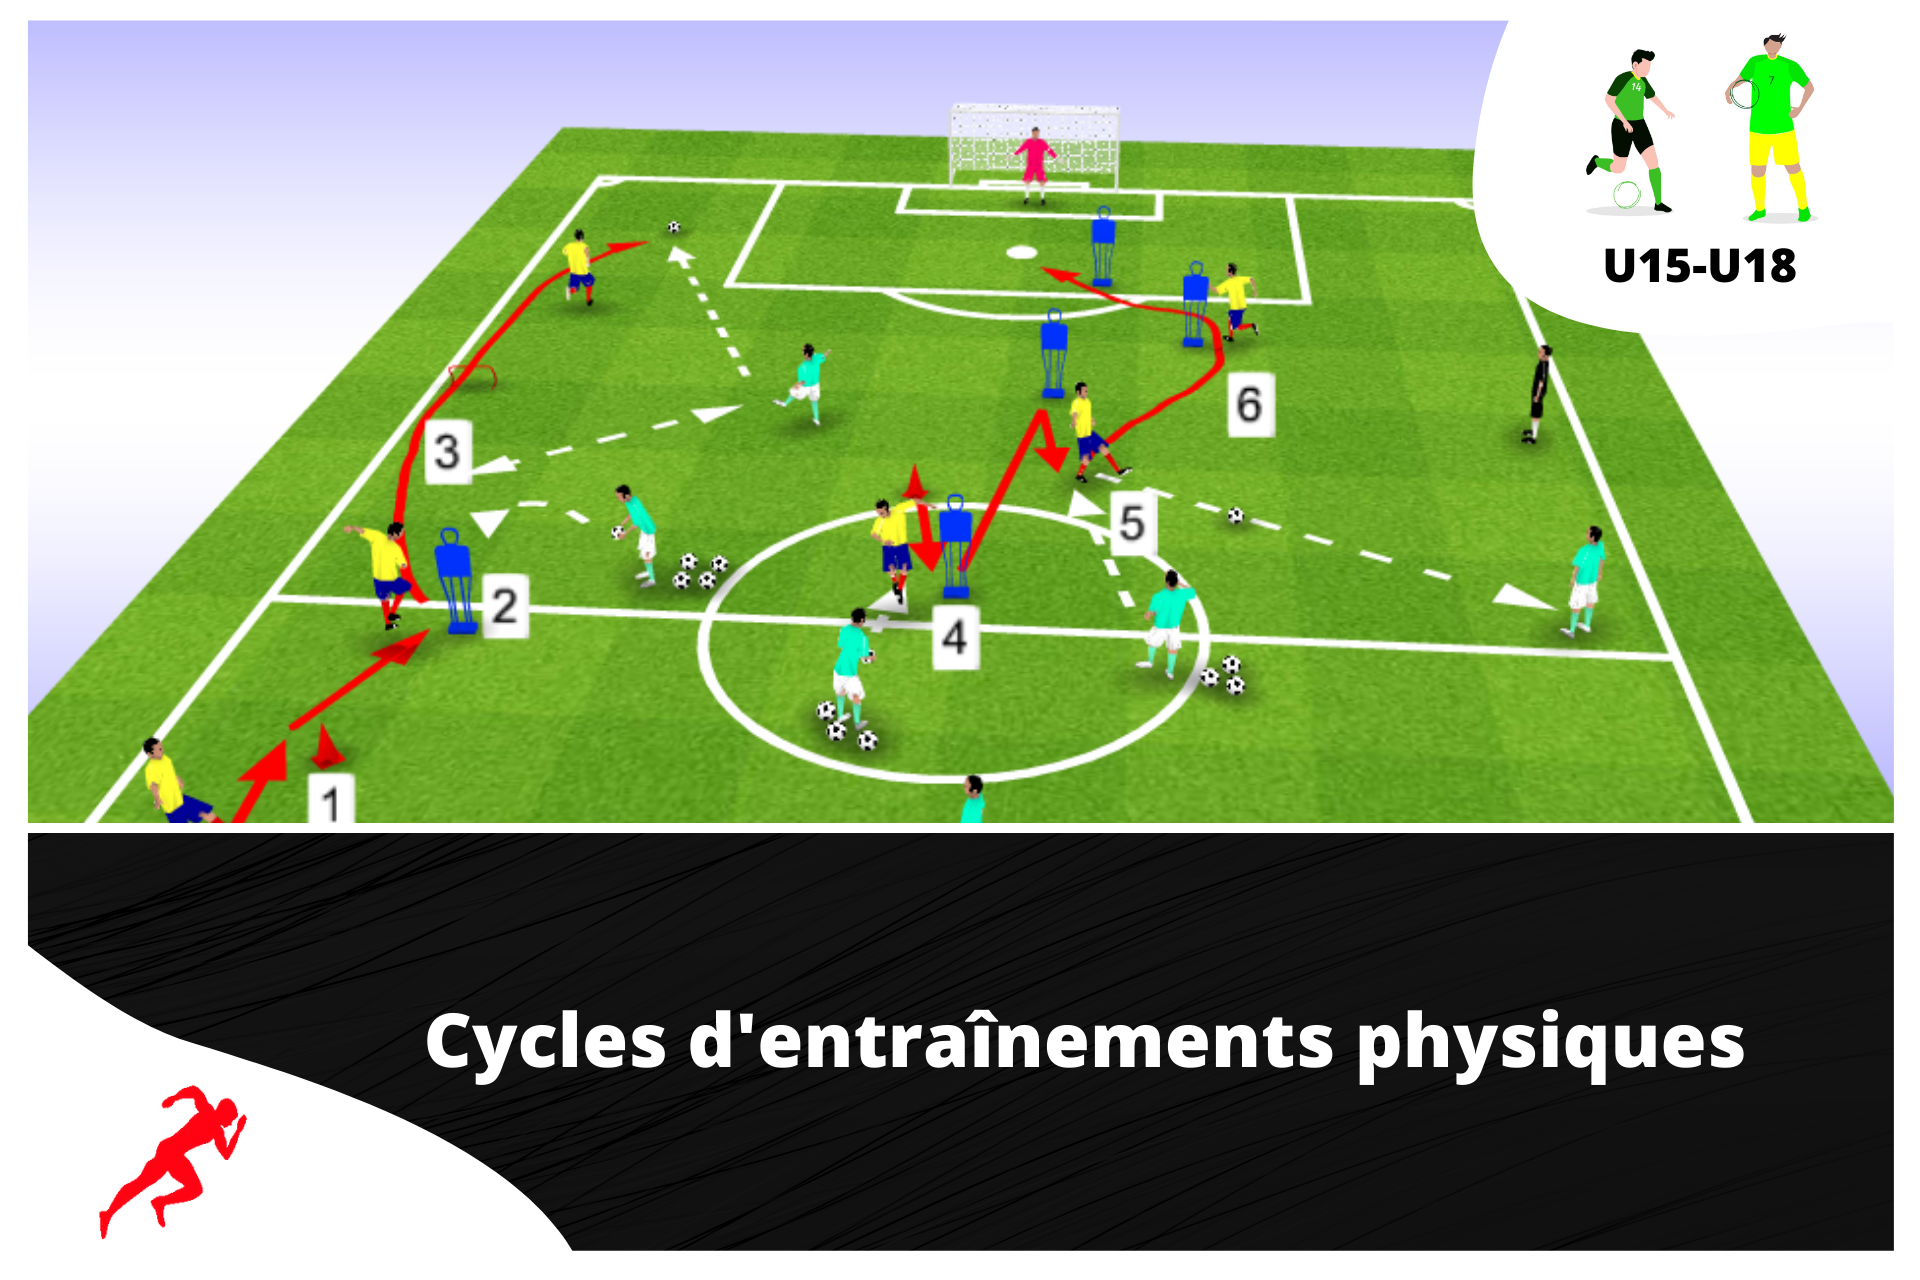 2 cycles d'entraînements physiques spécial "endurance puissance" U15 - U18 - preparationphysiquefootball-shop.com